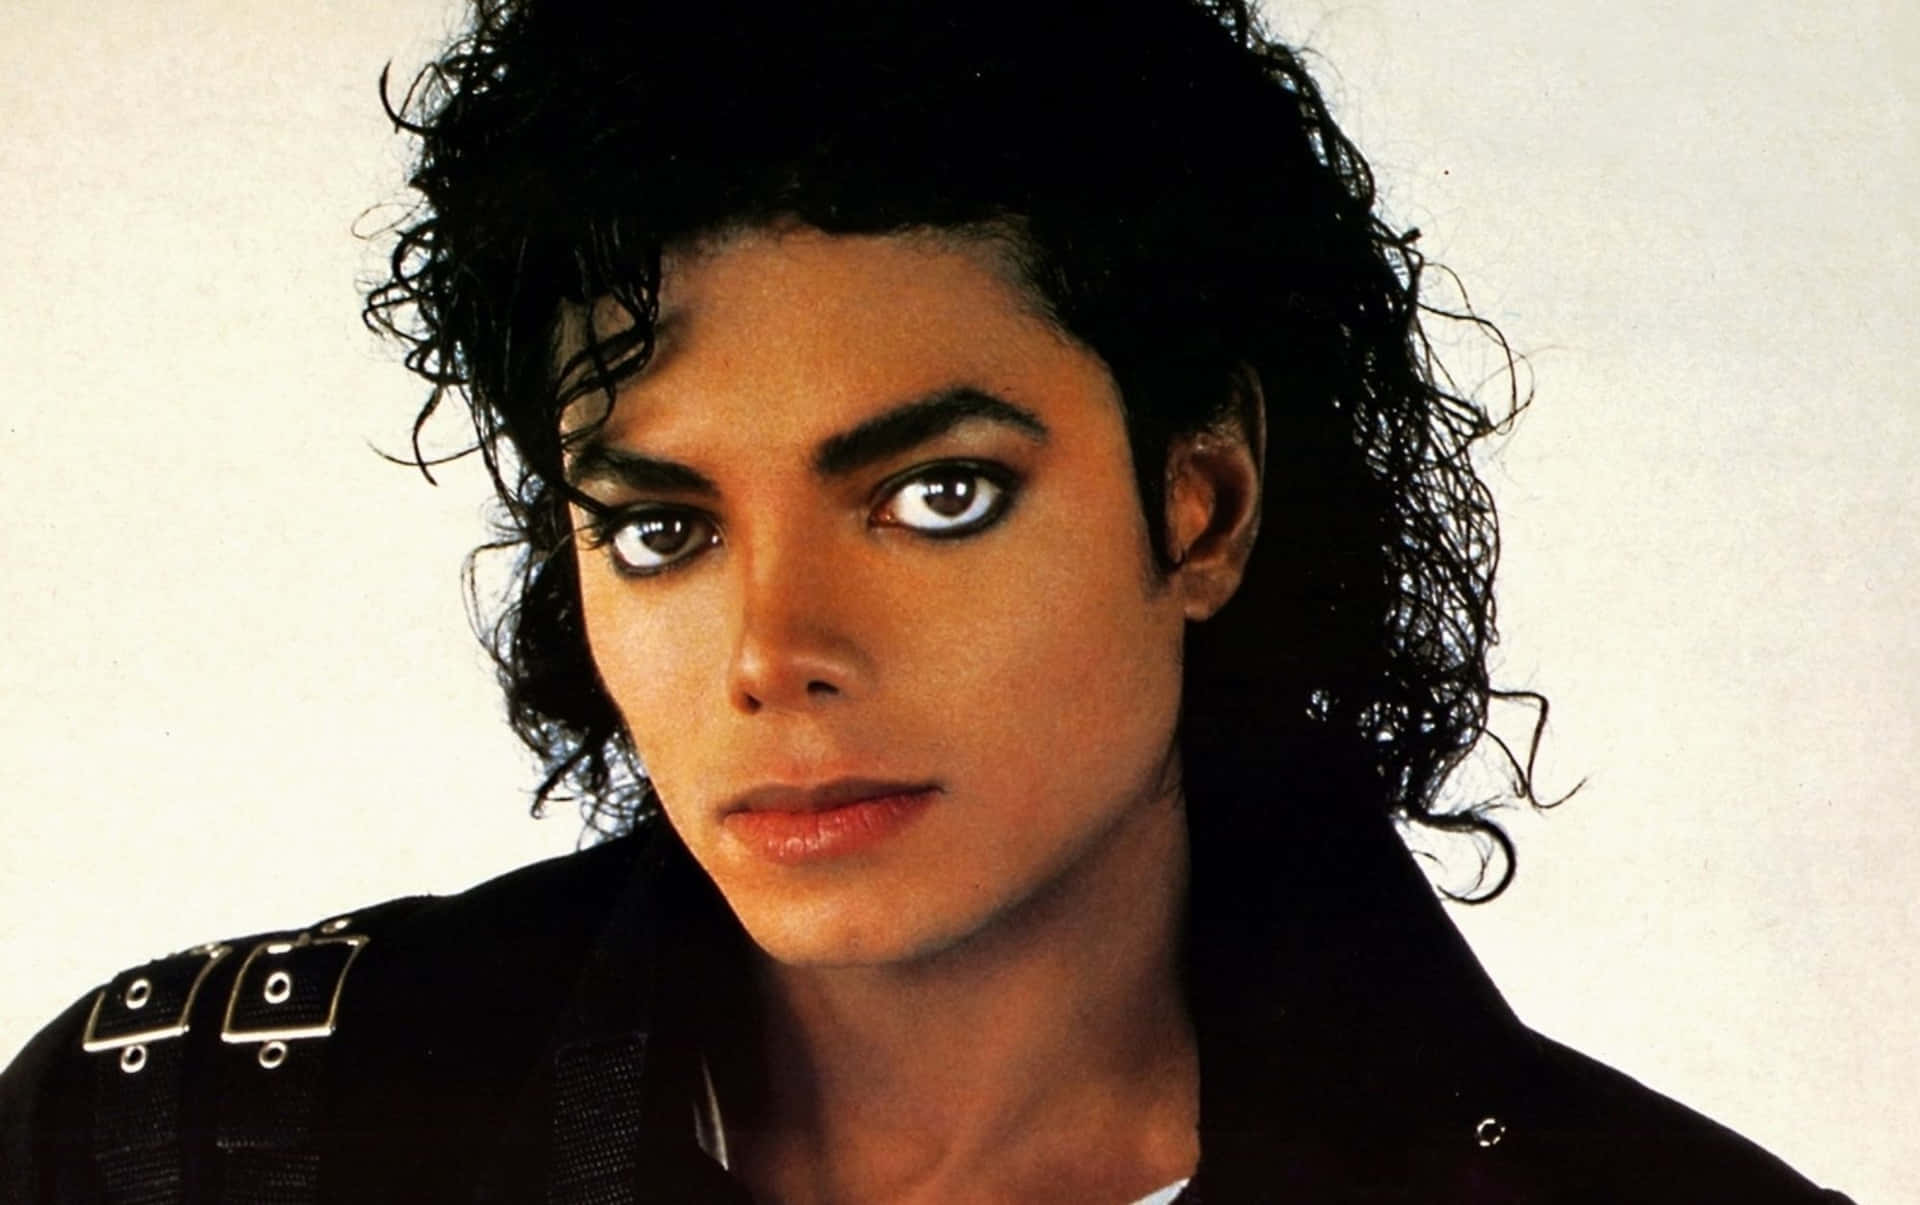 Billeder af Michael Jackson maleriske landskaber og dekorative tapeter.